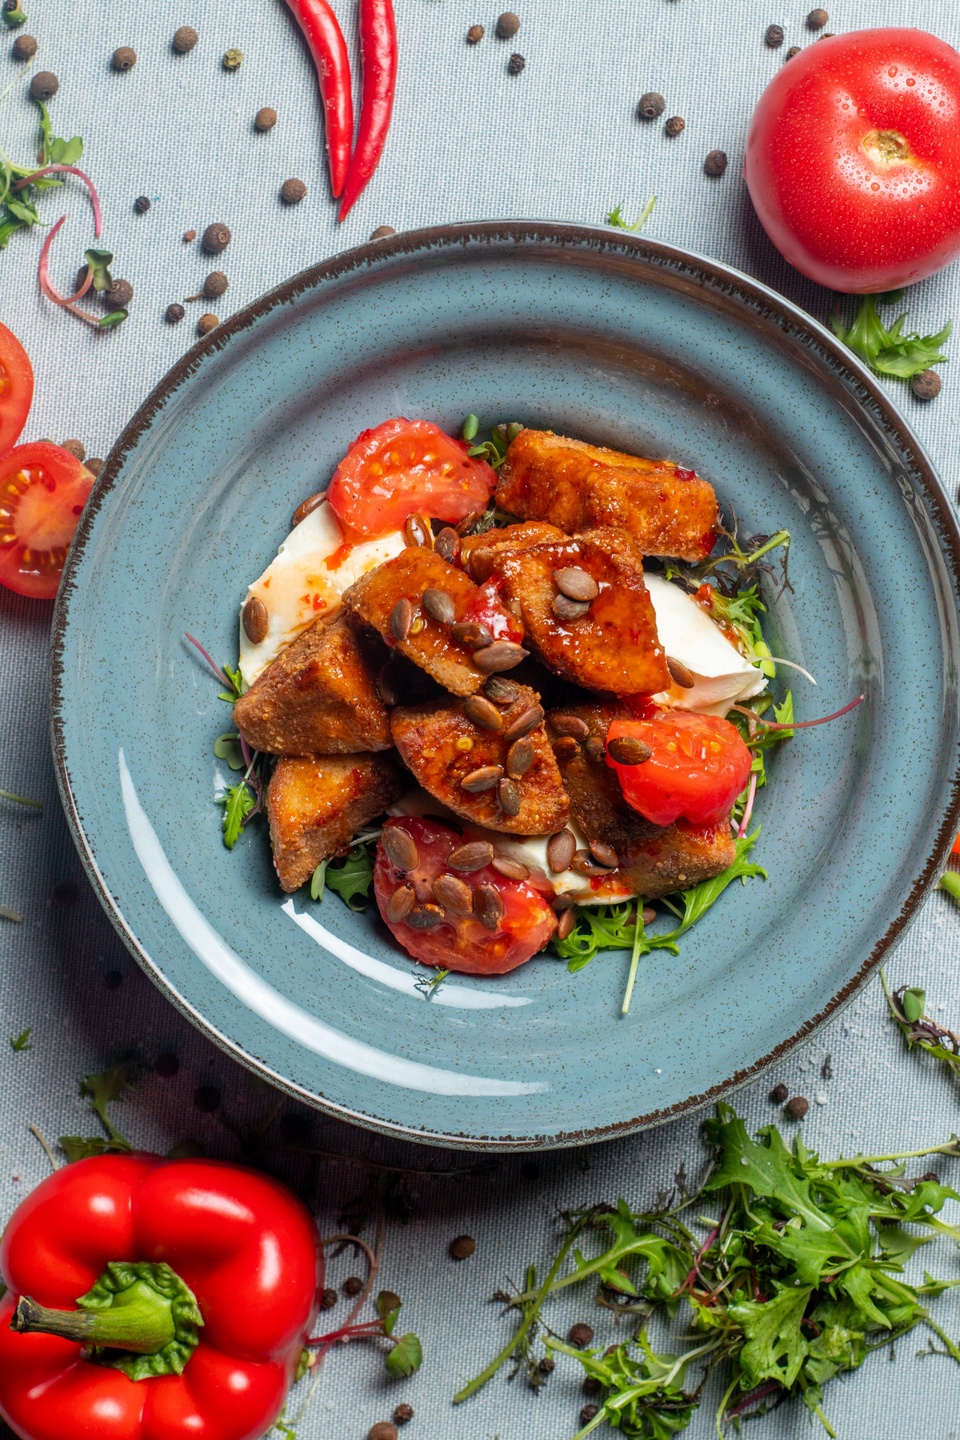 Хрустящий баклажан с томатами в кисло-сладком соусе - 350 ₽, заказать онлайн.